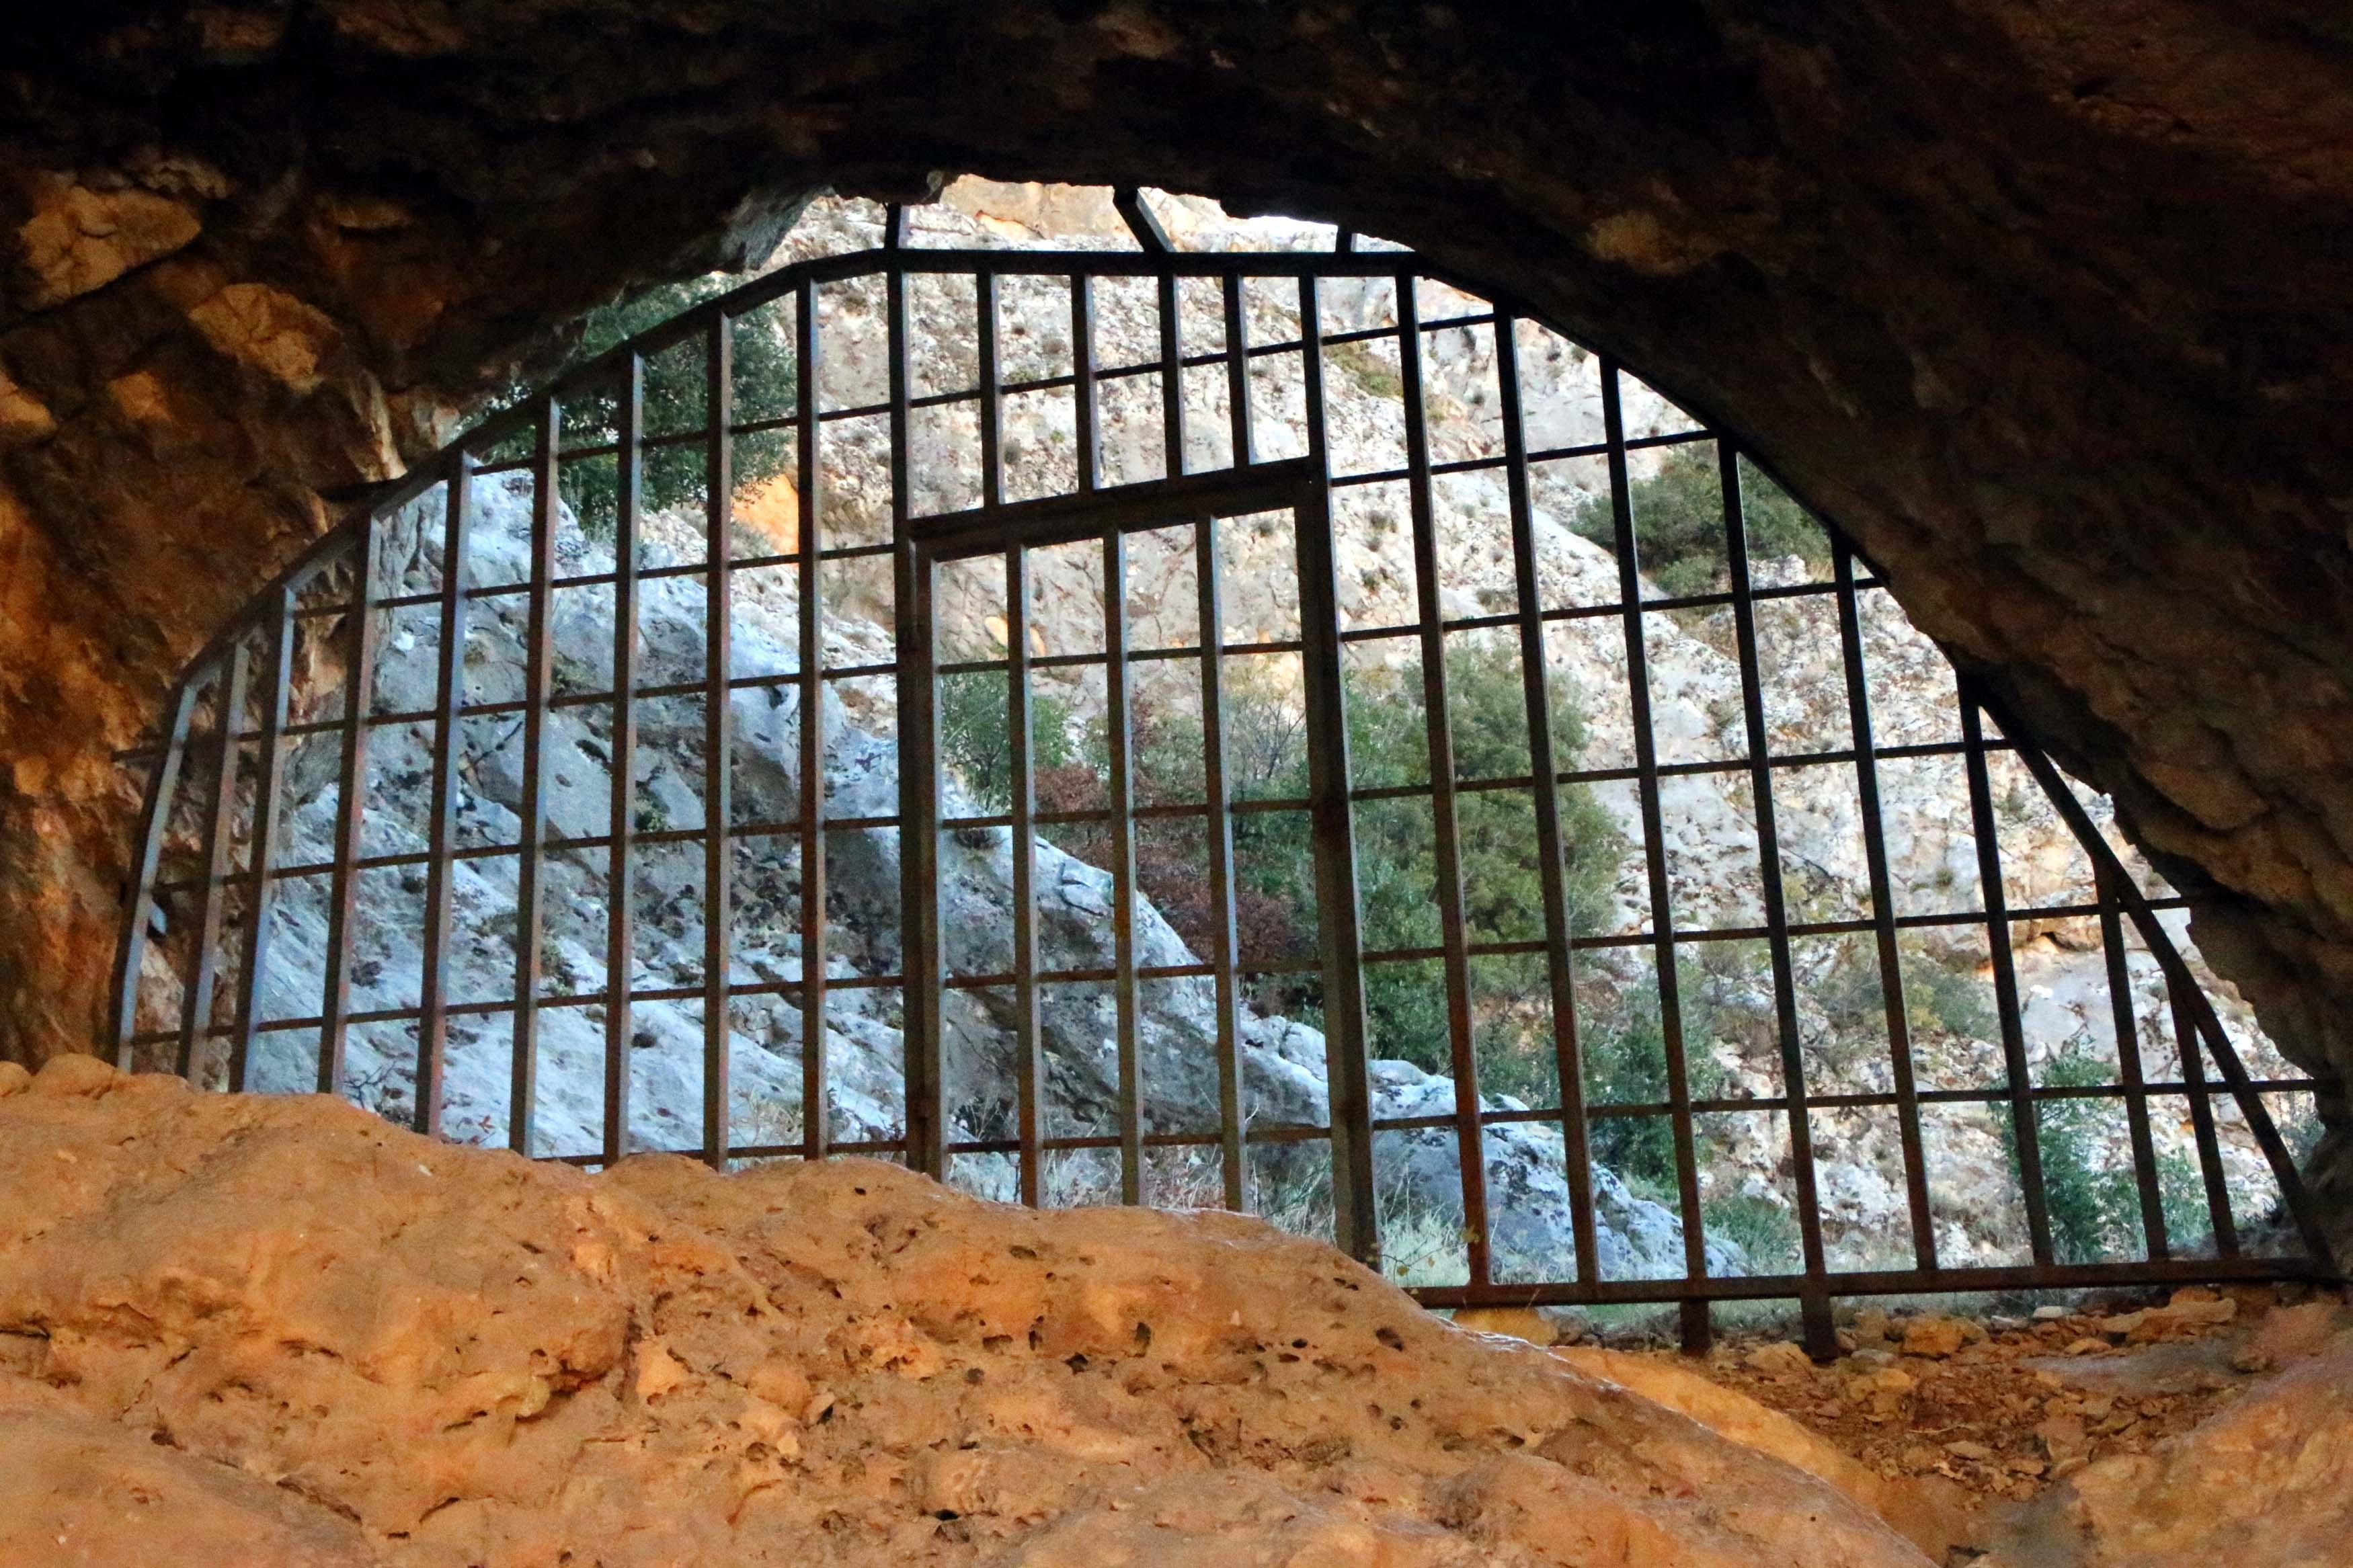 Defineciler tarafından tahrip edilen mağarada demir kapılı önlem